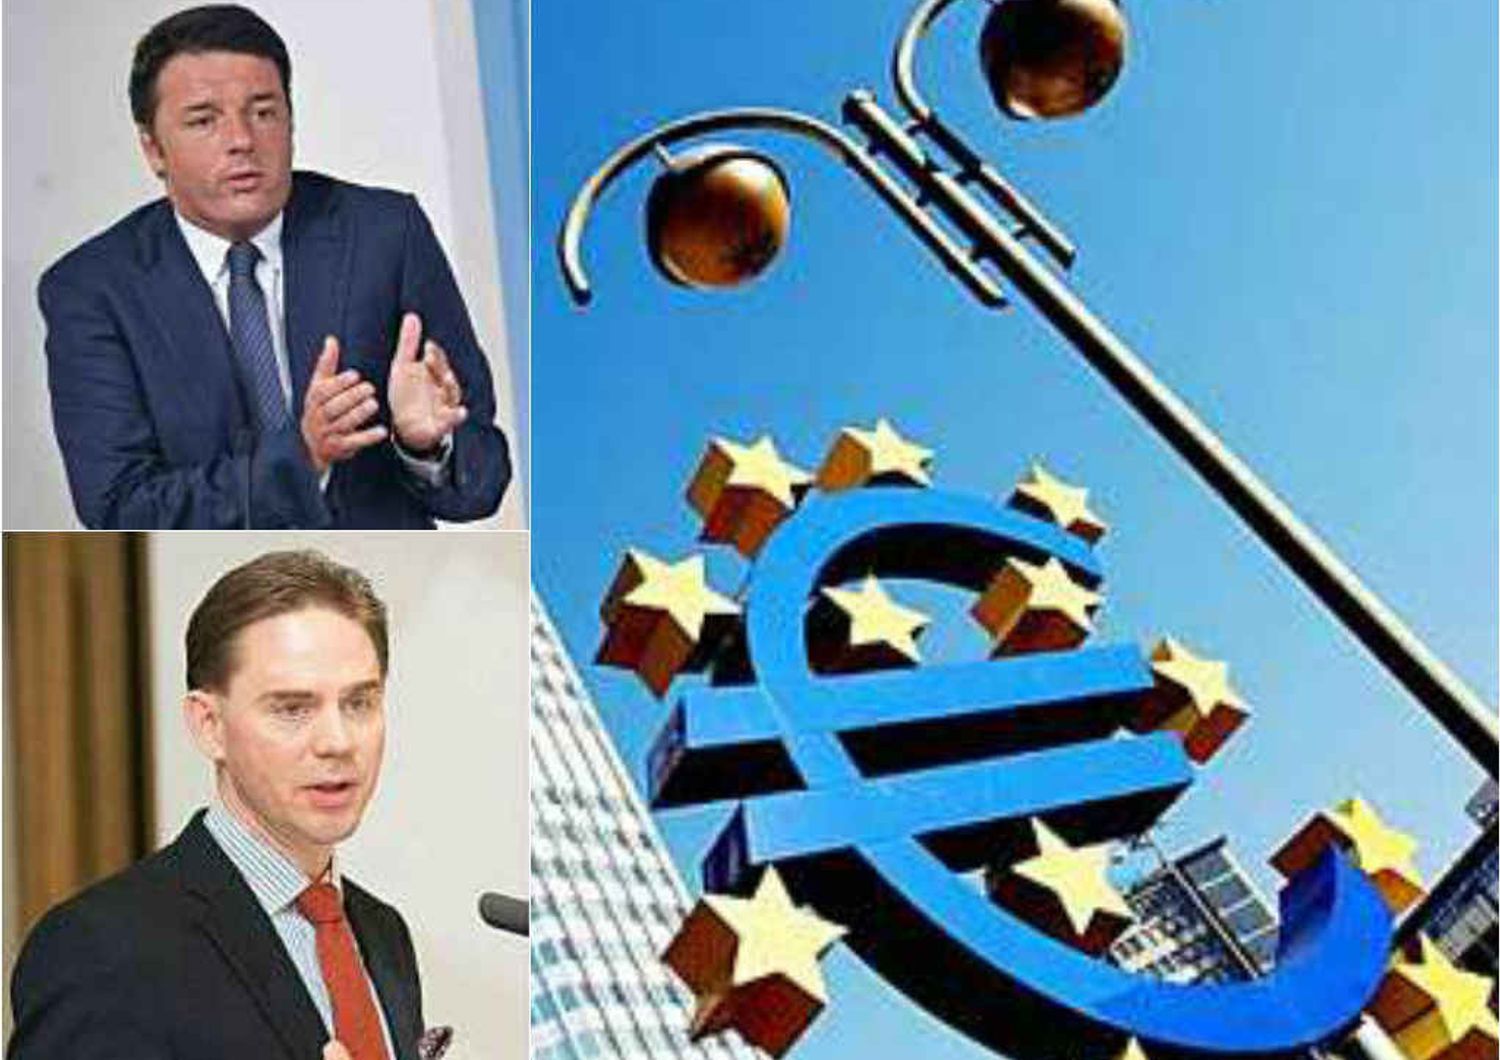 L'Ue incalza l'Italia: "Subito misure per aggiustare i conti"